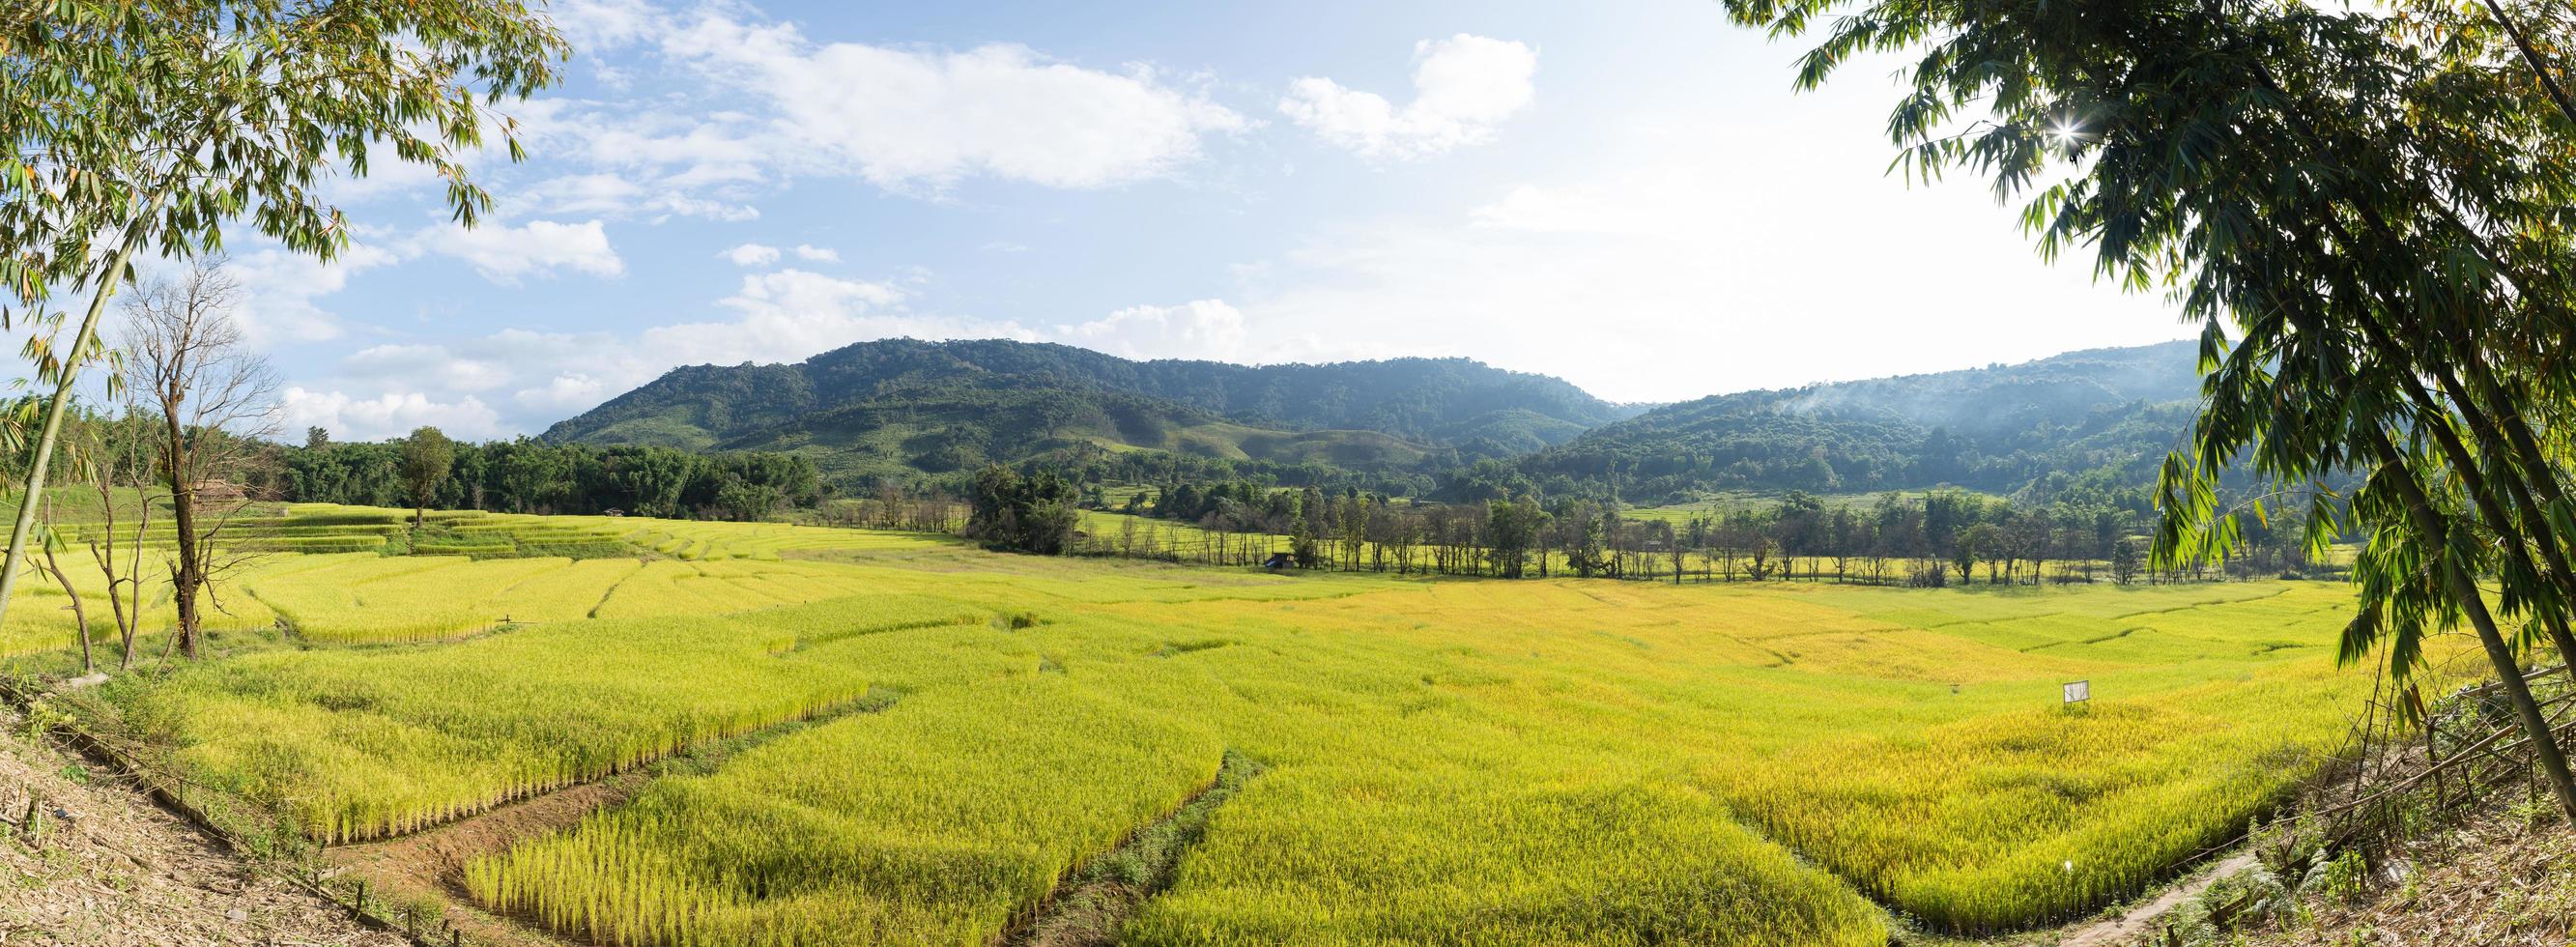 campo de arroz y montaña foto